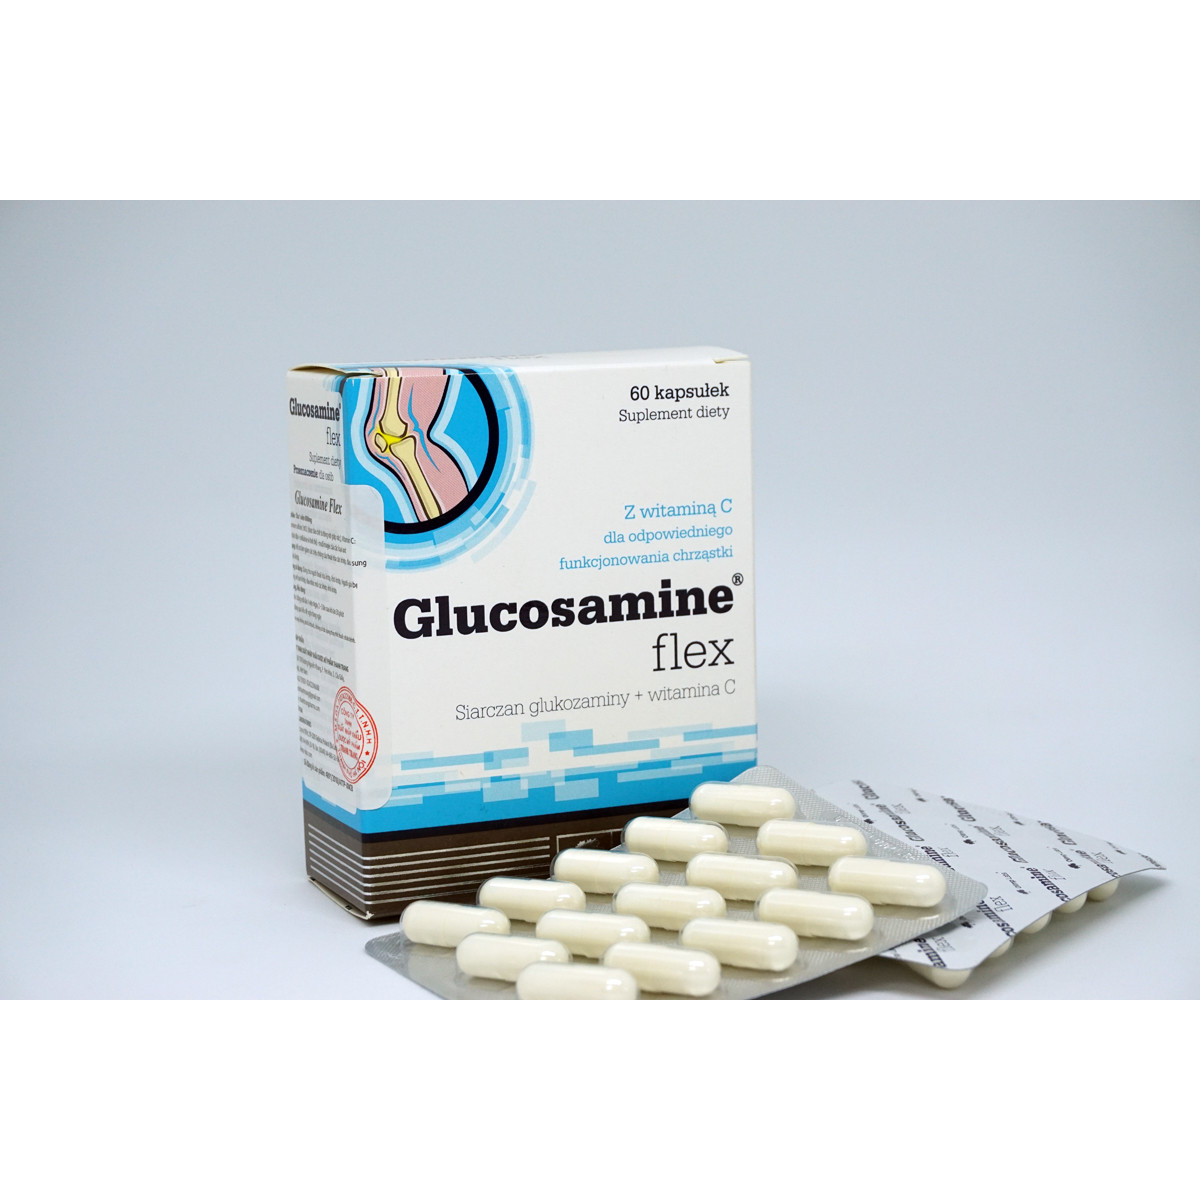 Viên uống bổ khớp Glucosamin Flex hỗ trợ giảm các triệu chứng của thoái hóa khớp, đau sưng khớp, khô khớp